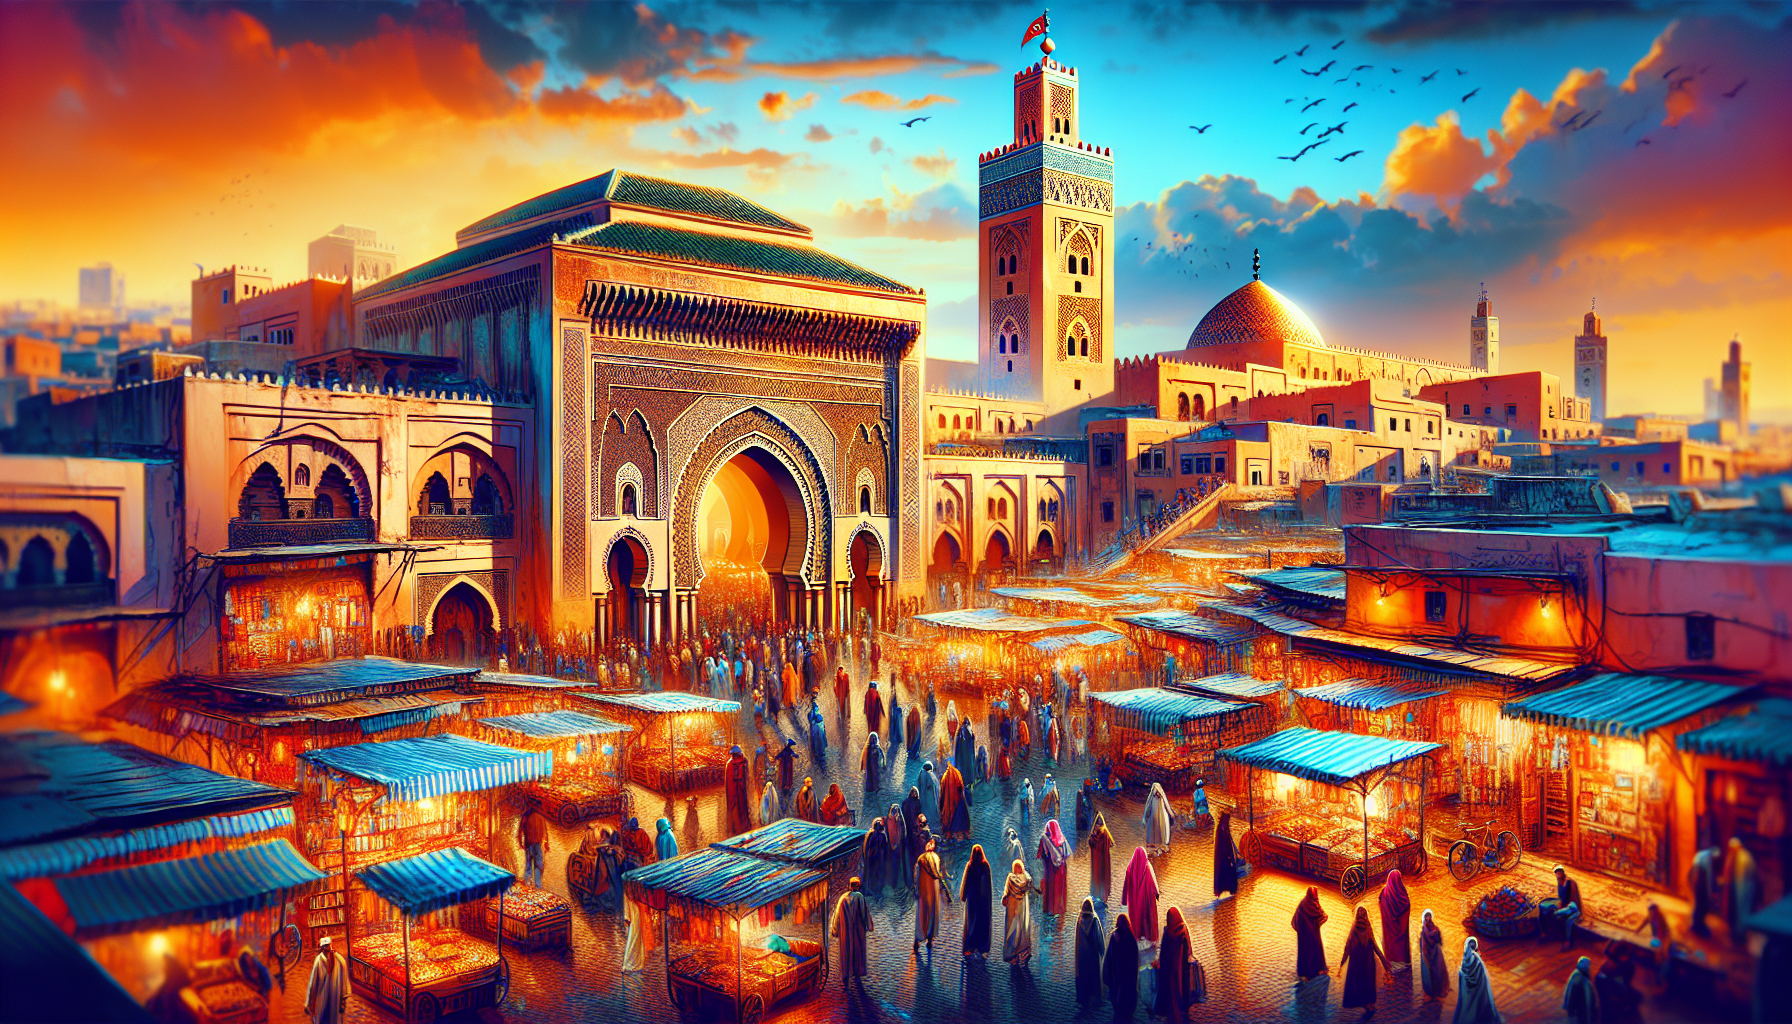 découvrez marrakech, la perle du tourisme marocain, entre culture, histoire et dépaysement. trouvez ici toutes les informations pour un séjour inoubliable à marrakech.